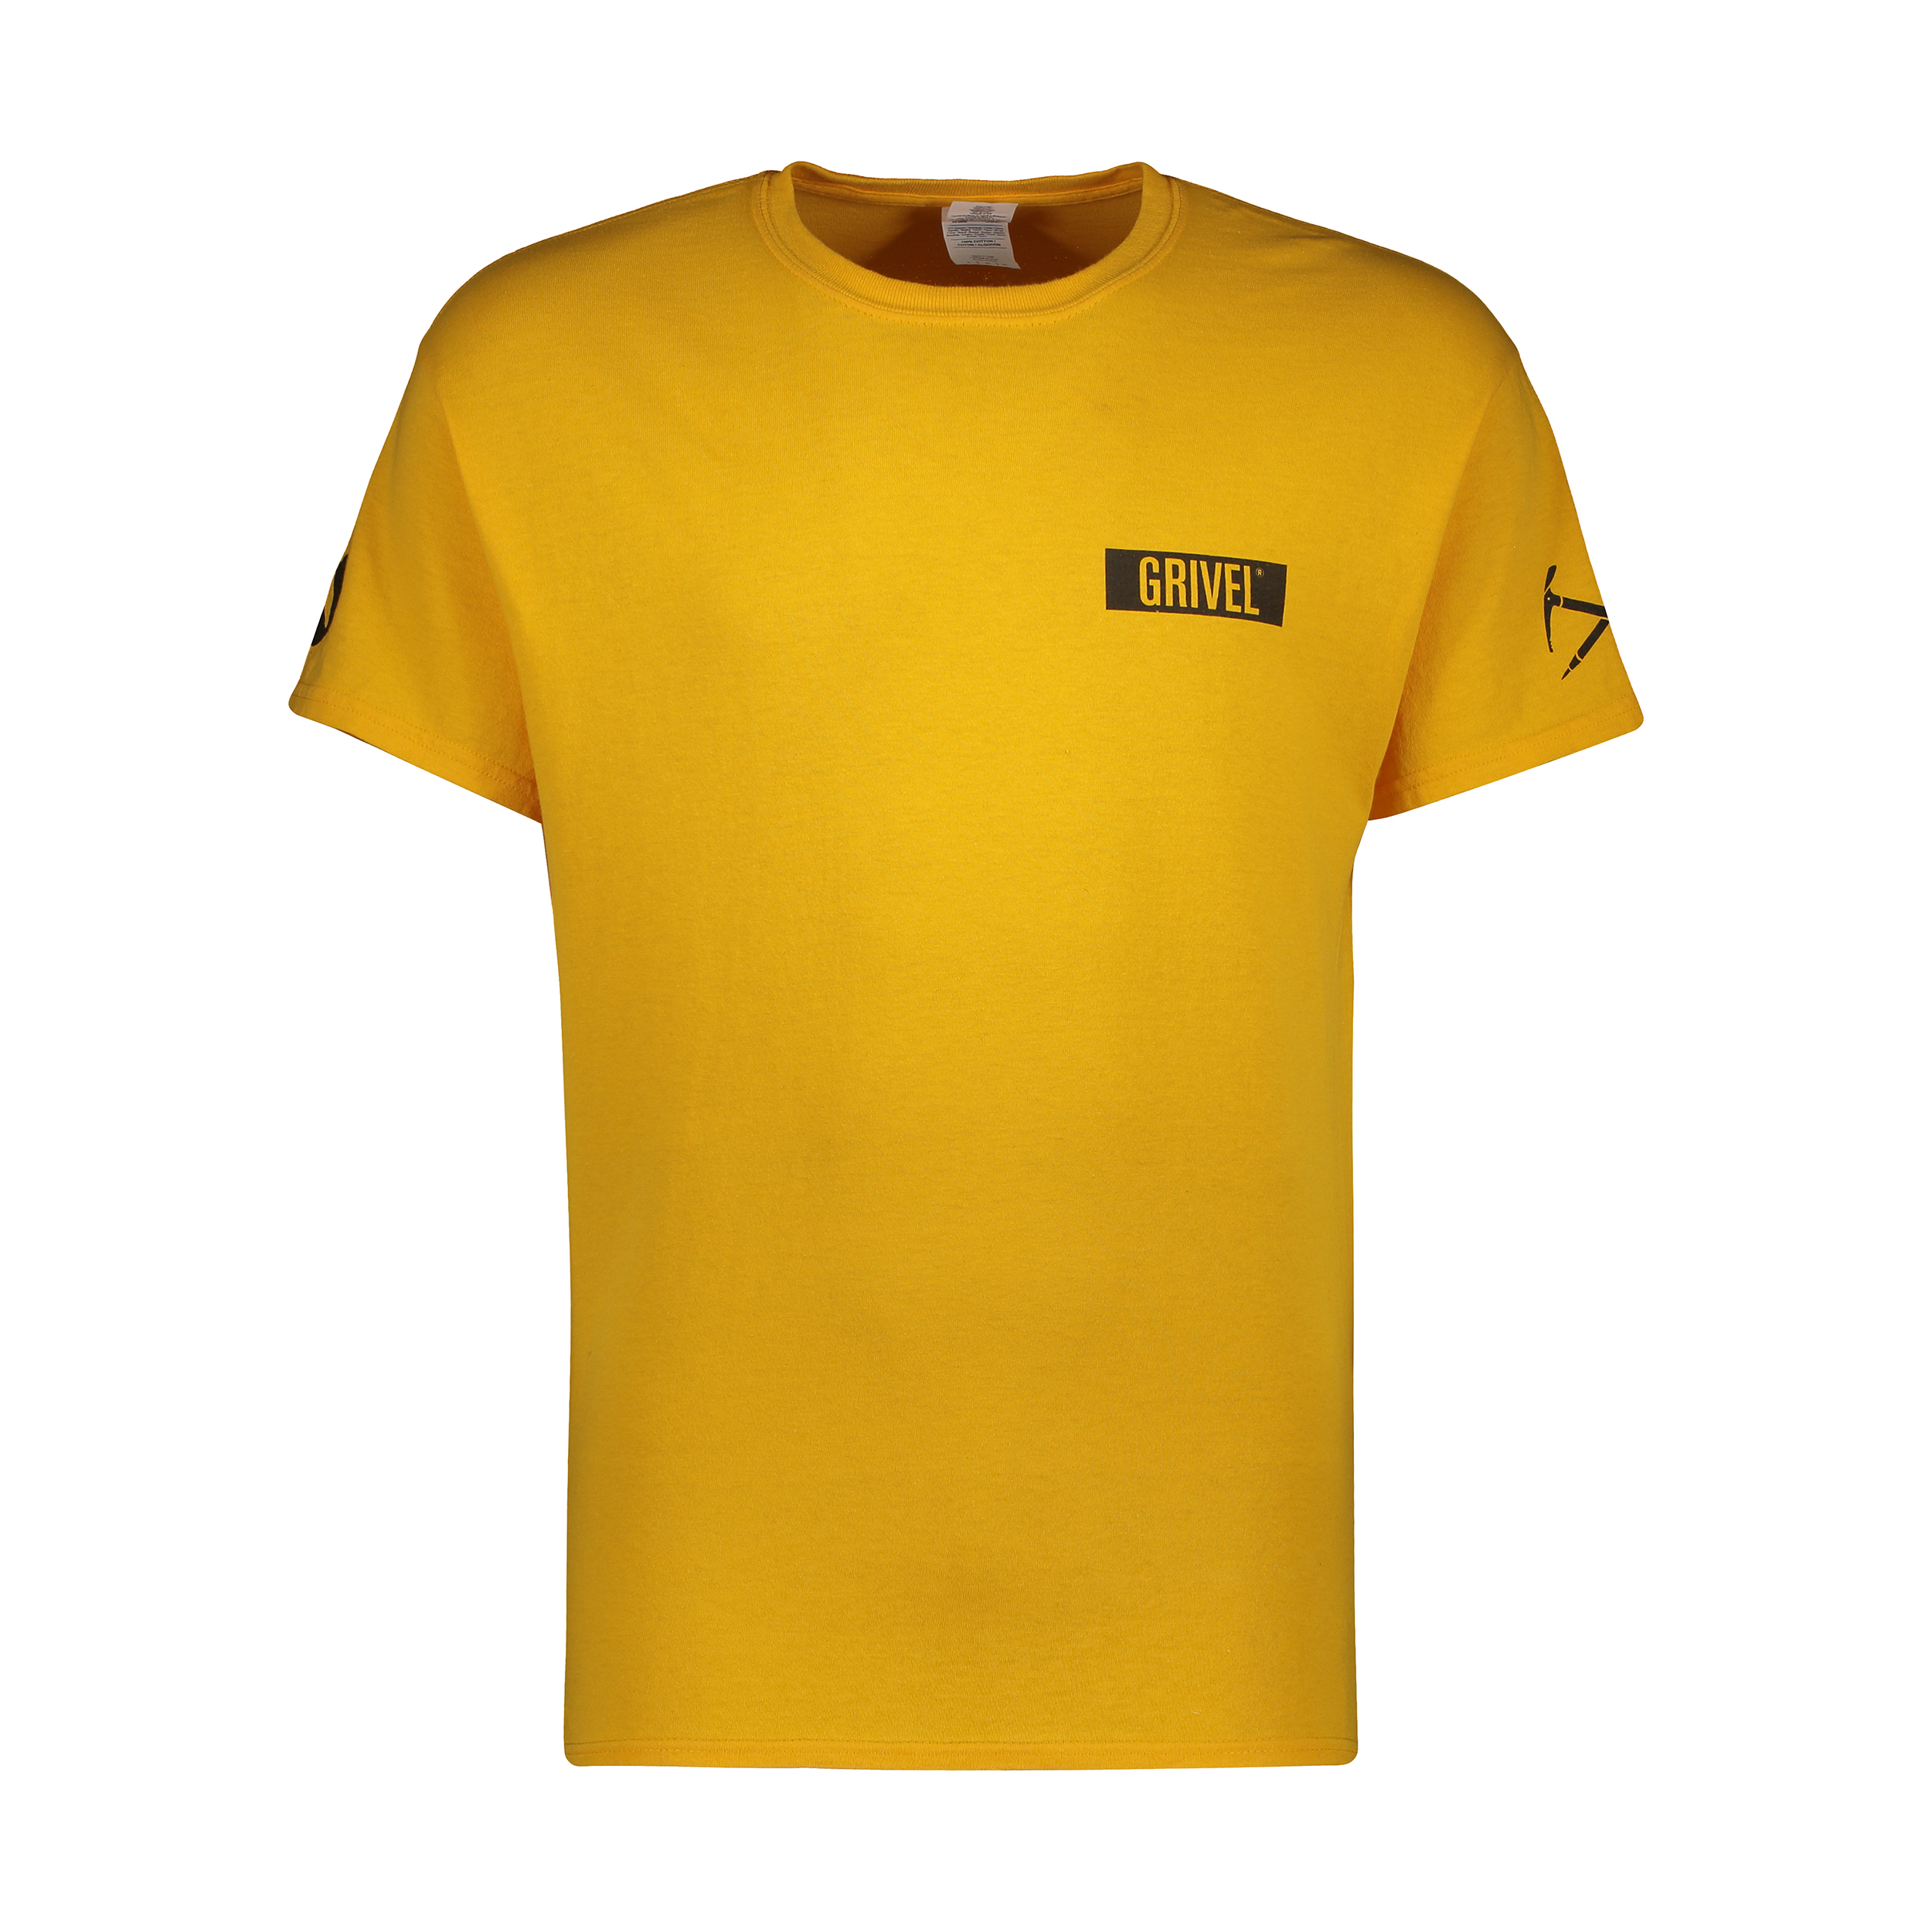 تی شرت ورزشی مردانه گریول مدل GRV-100